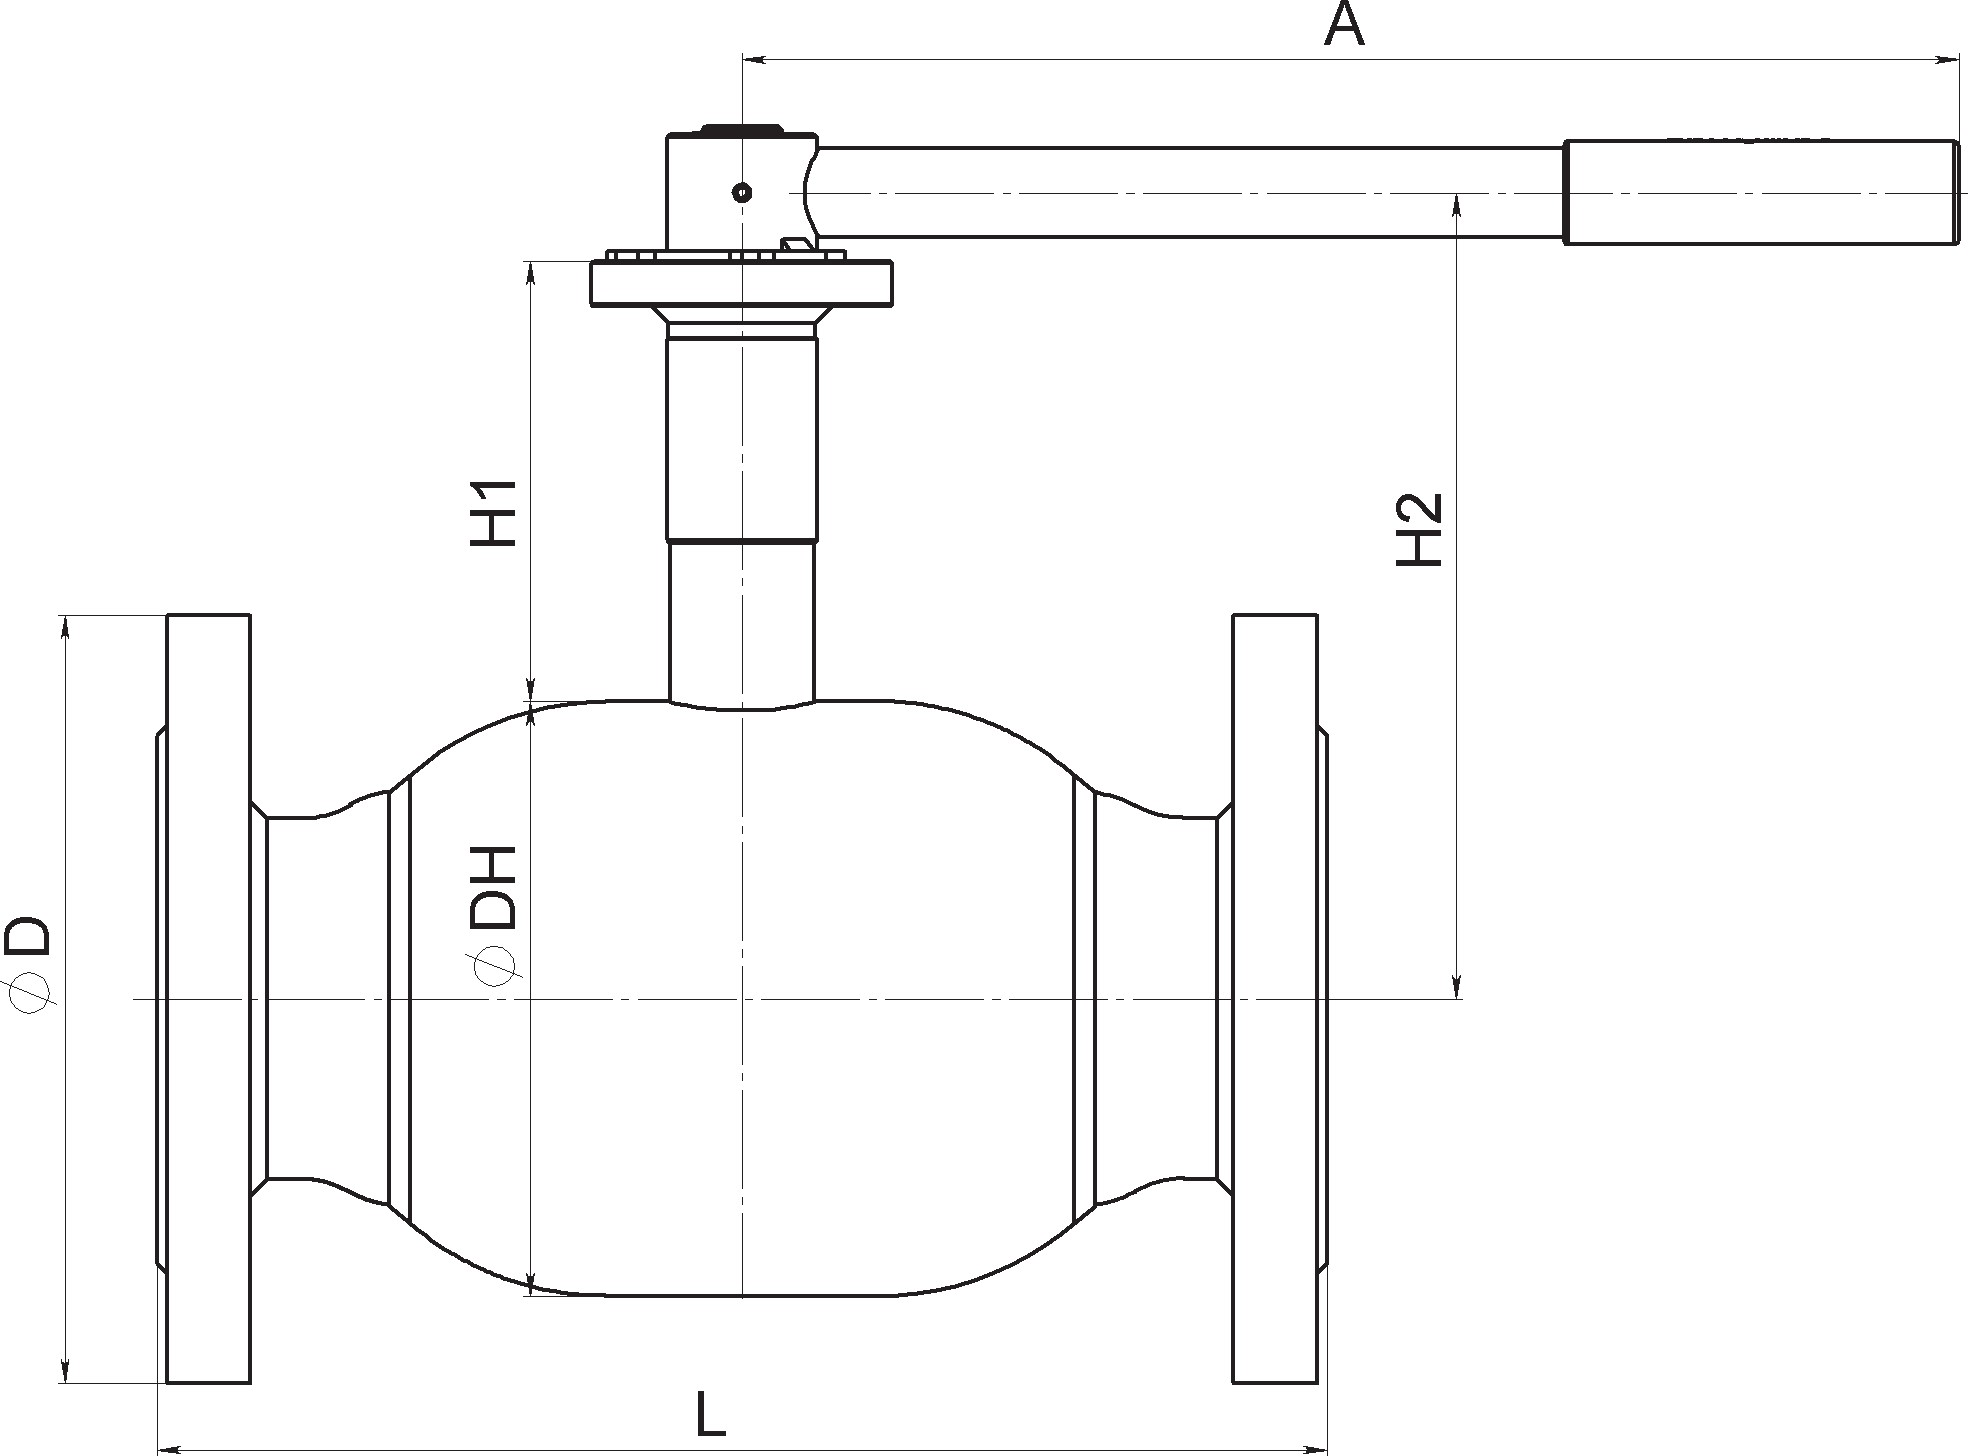 Кран шаровый Broen Ballomax-КШТ61.113А.16-25 Ду100 Ру25 полнопроходный с плавающим шаром, с ISO фланцем, корпус - сталь, уплотнение - EPDM, фланцевый, ручка-рычаг